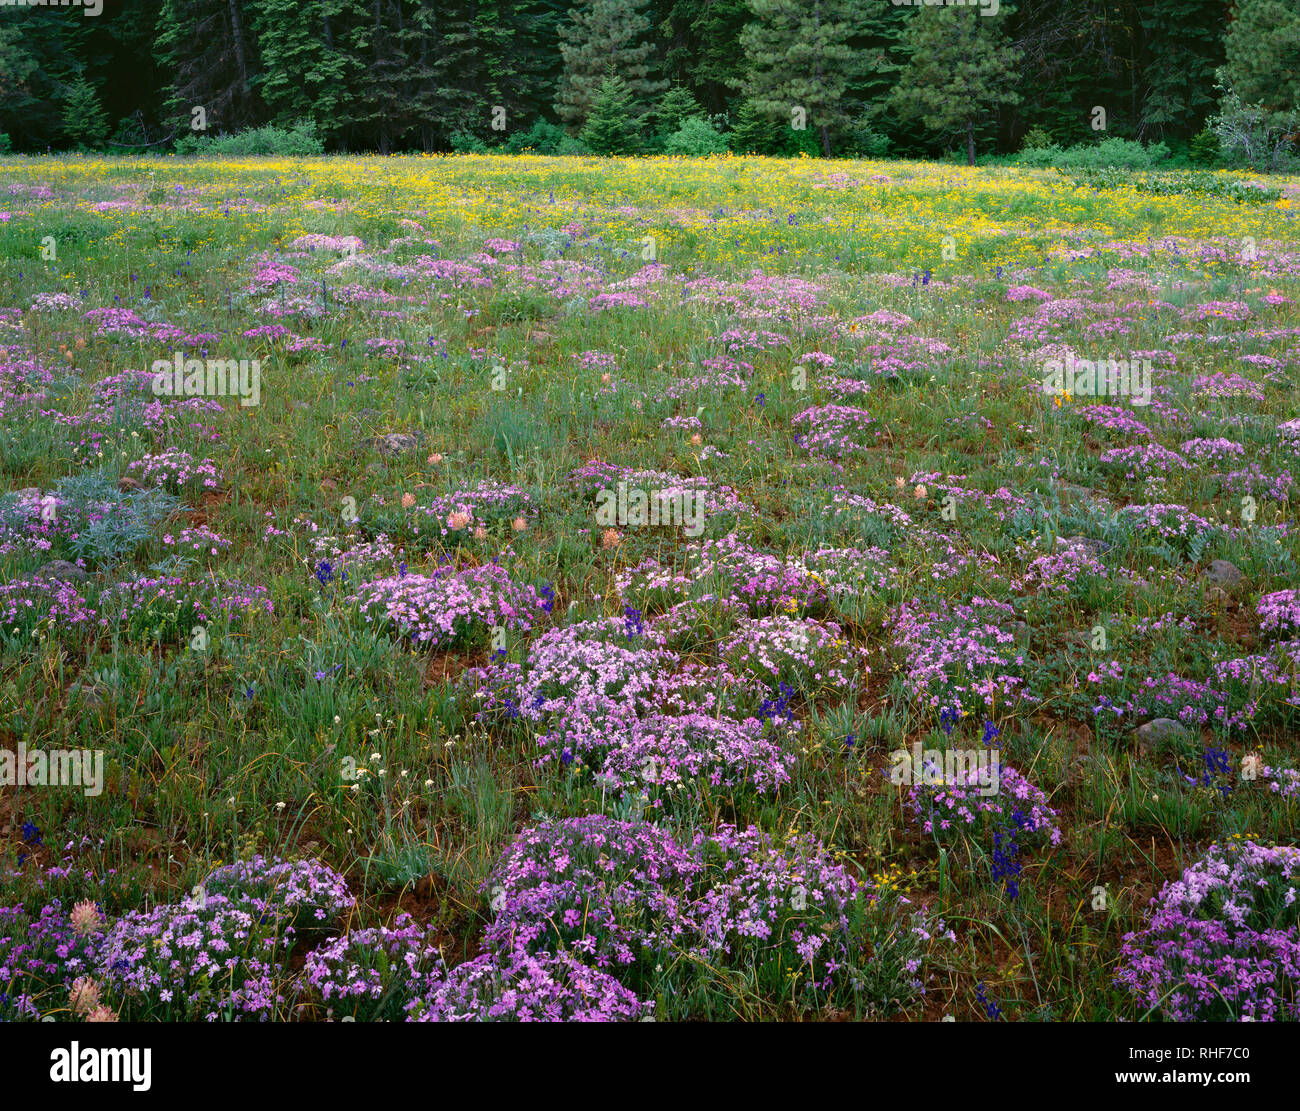 USA, Oregon, Hells Canyon National Recreation Area, Verbreitung phlox und andere Wildblumen blühen in der Wiese in der Nähe von immergrünen Wald. Stockfoto